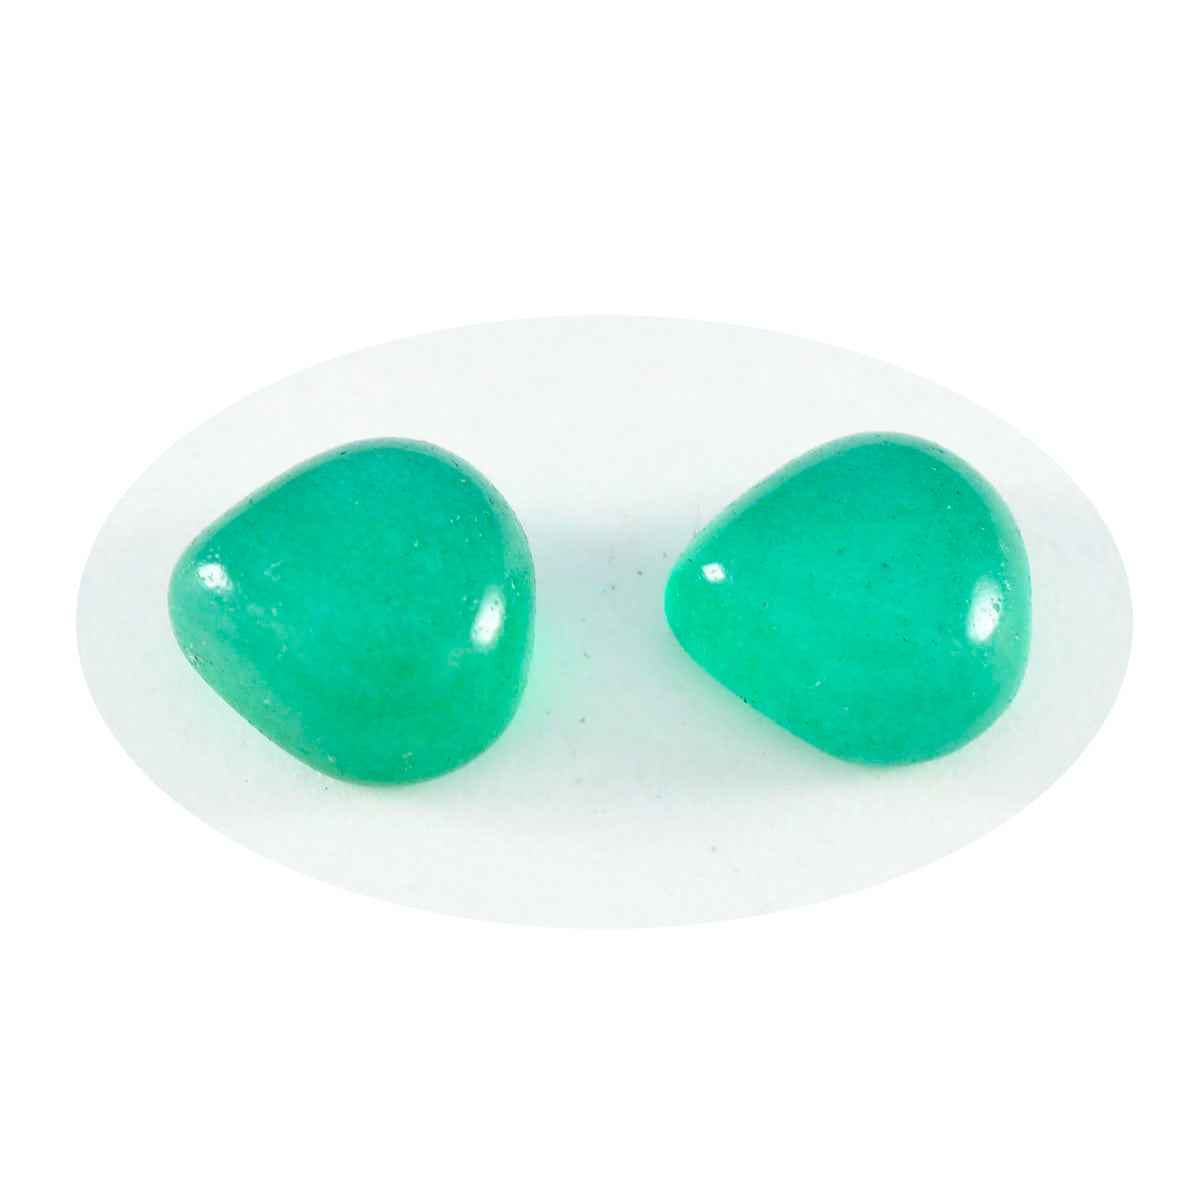 Riyogems 1 pieza cabujón de ónix verde 9x9 mm forma de corazón gemas de calidad fantástica